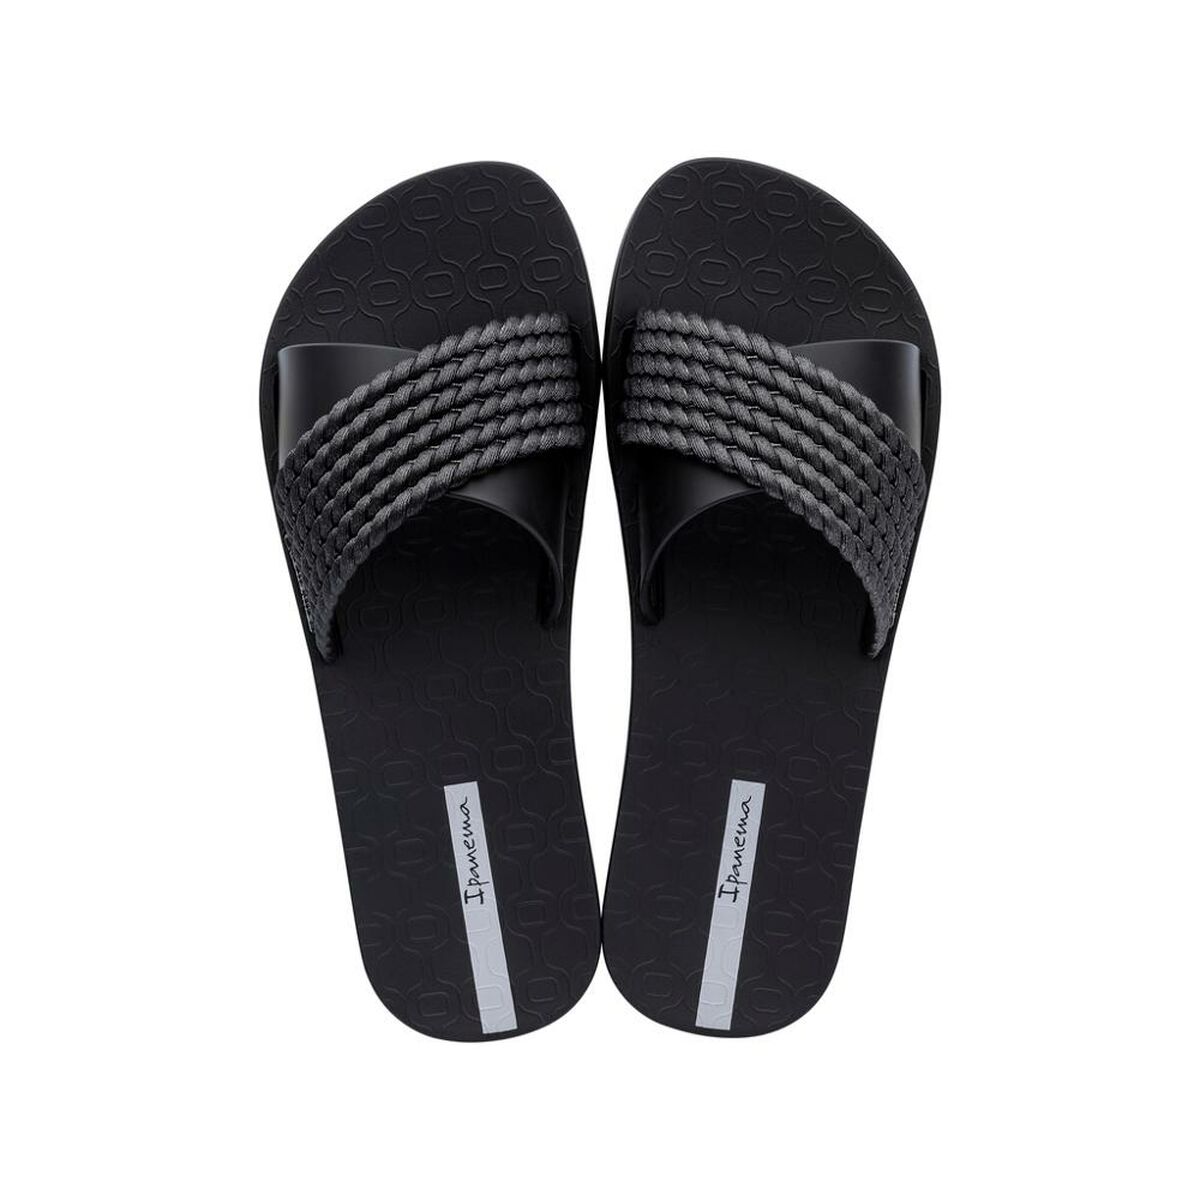 Osta tuote Naisten sandaalit Ipanema verkkokaupastamme Korhone: Urheilu & Vapaa-aika 10% alennuksella koodilla KORHONE